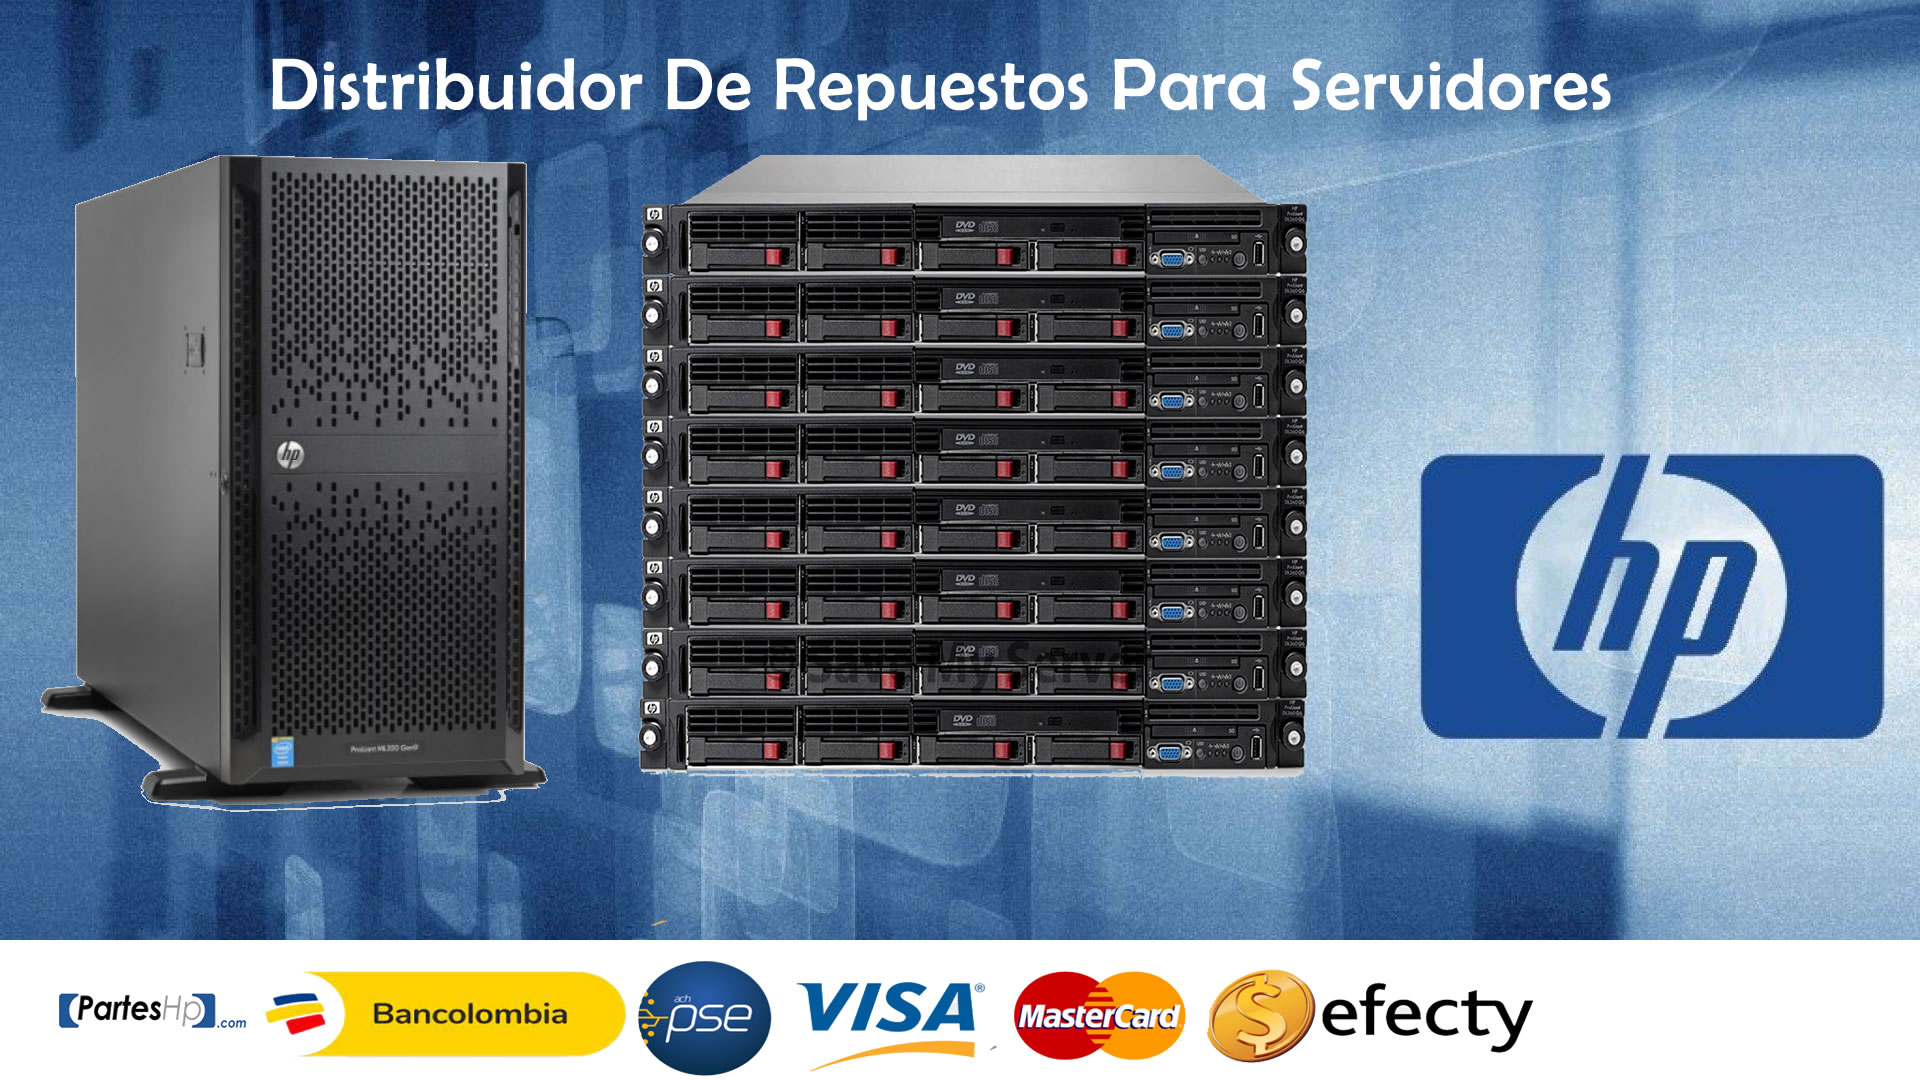 Distribuidor De Repuestos hp server